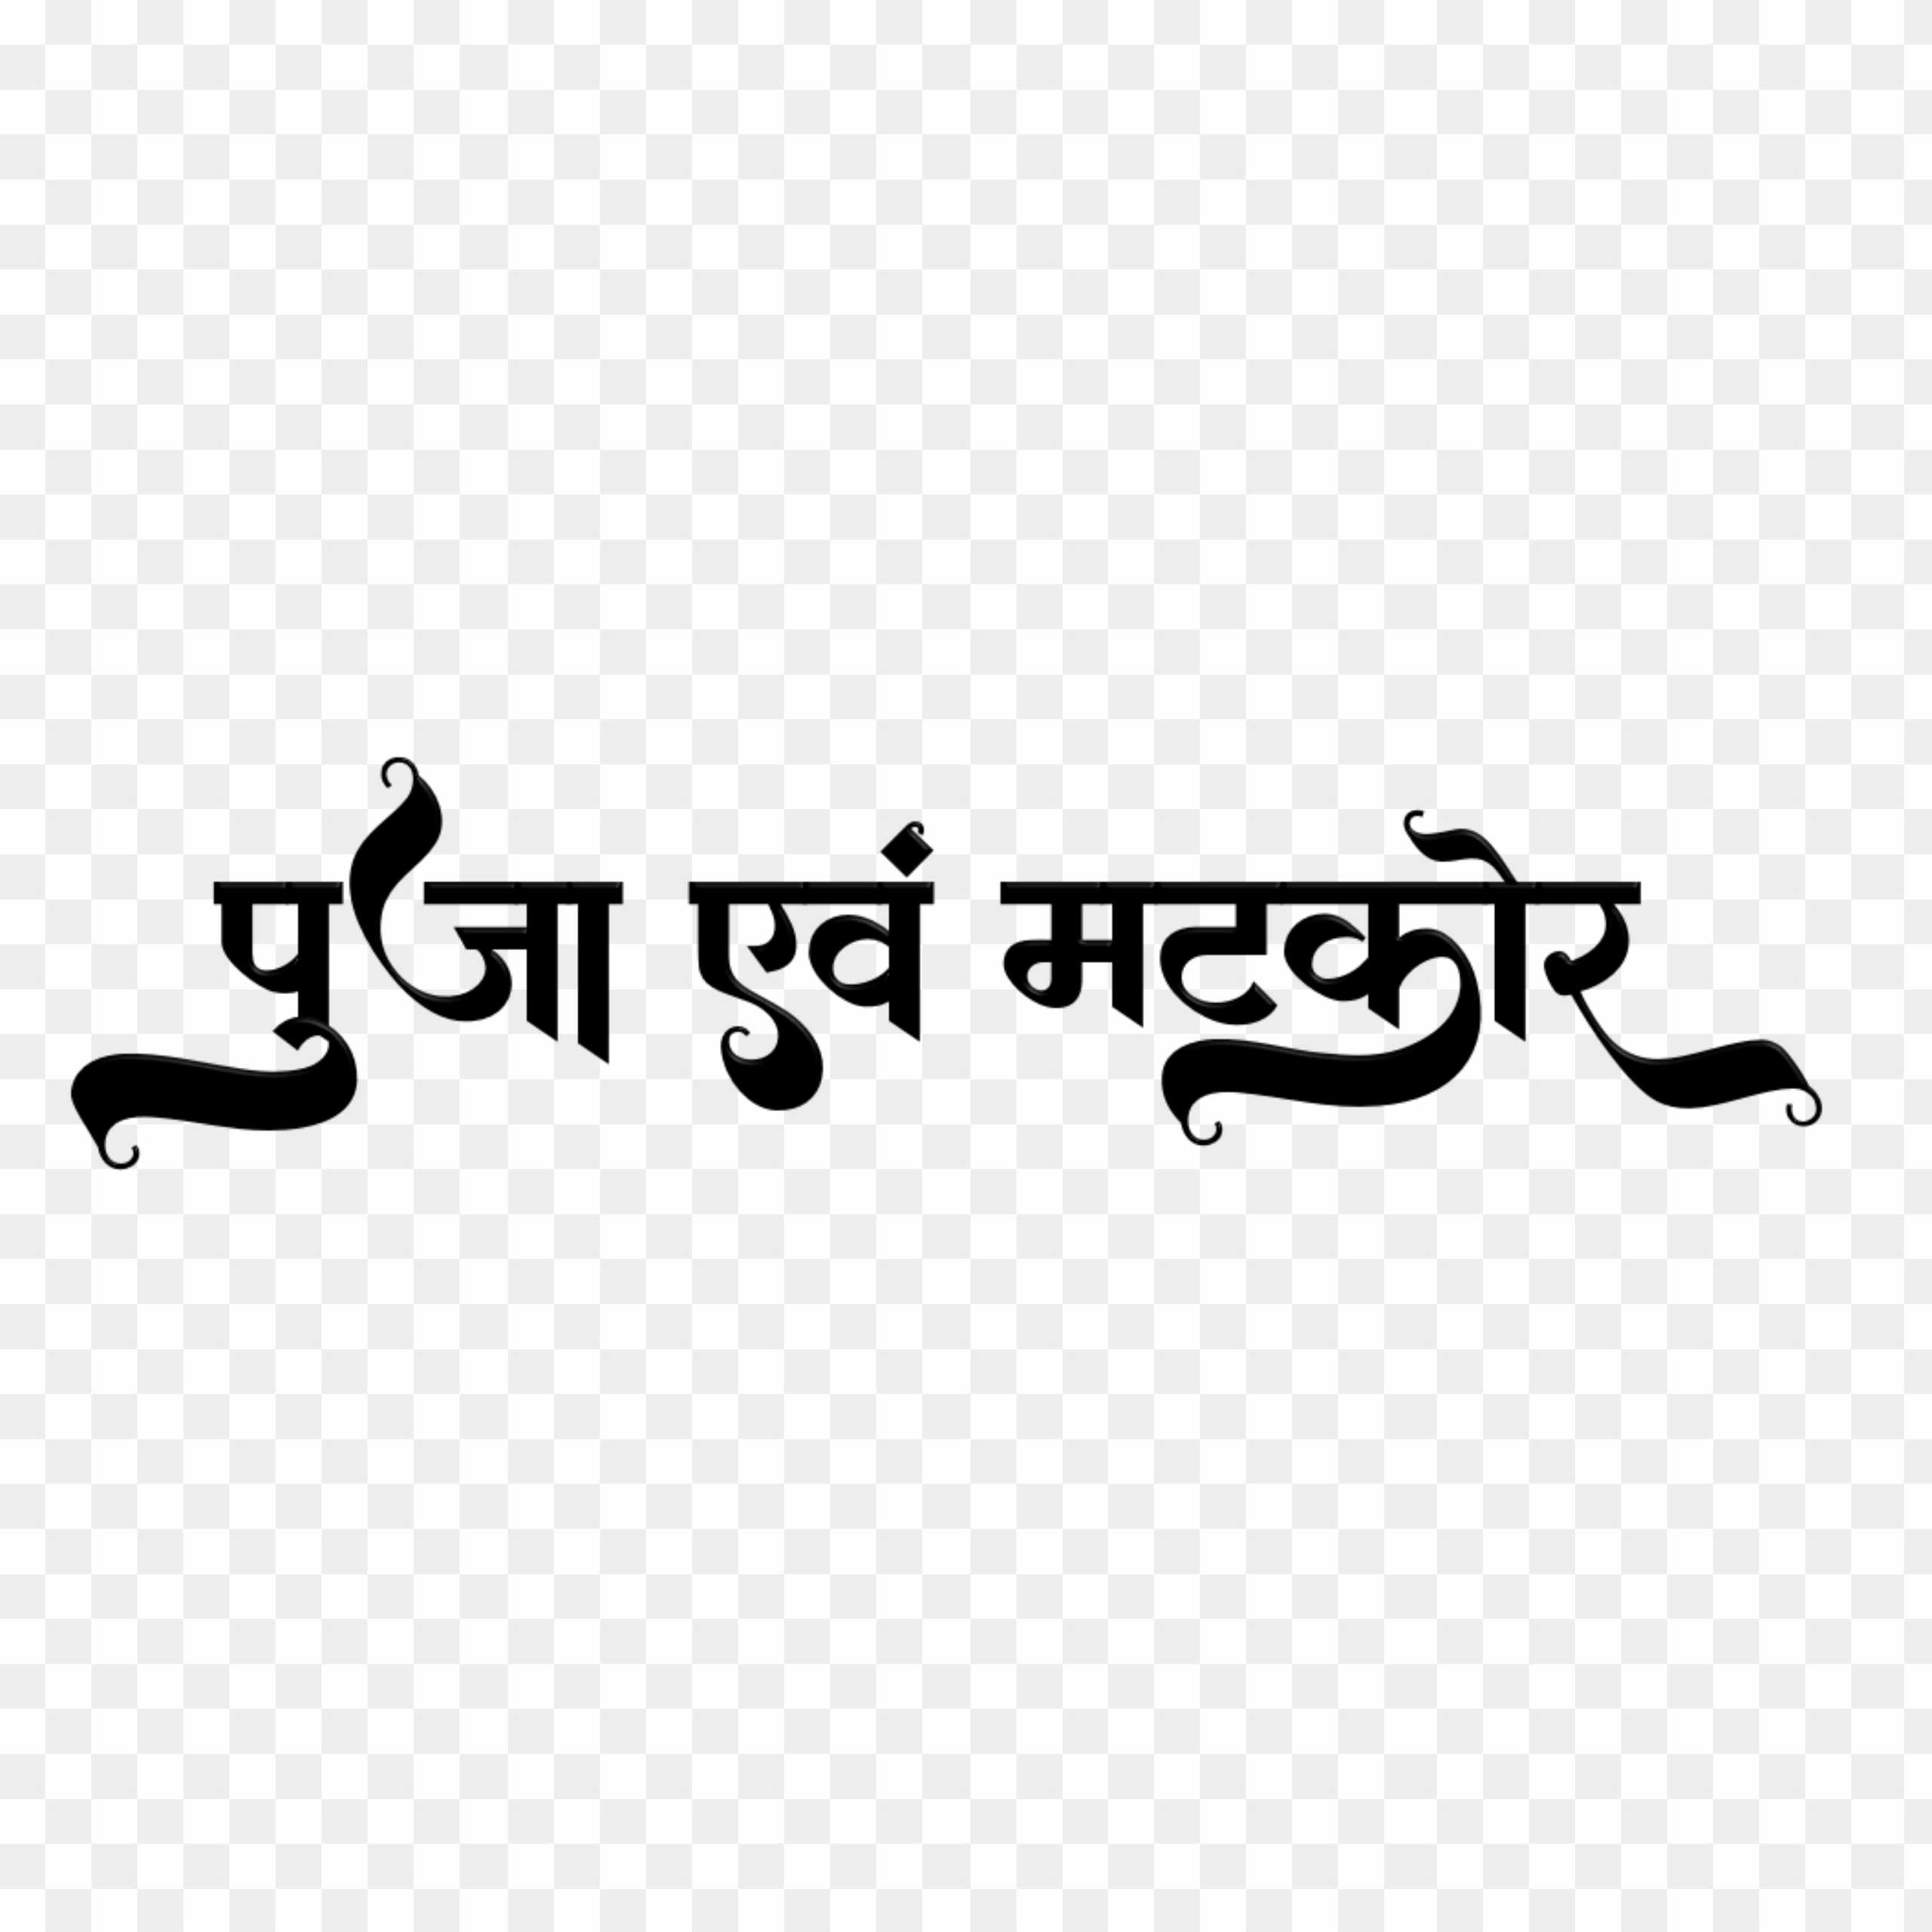 Puja matkor hindi text png images 